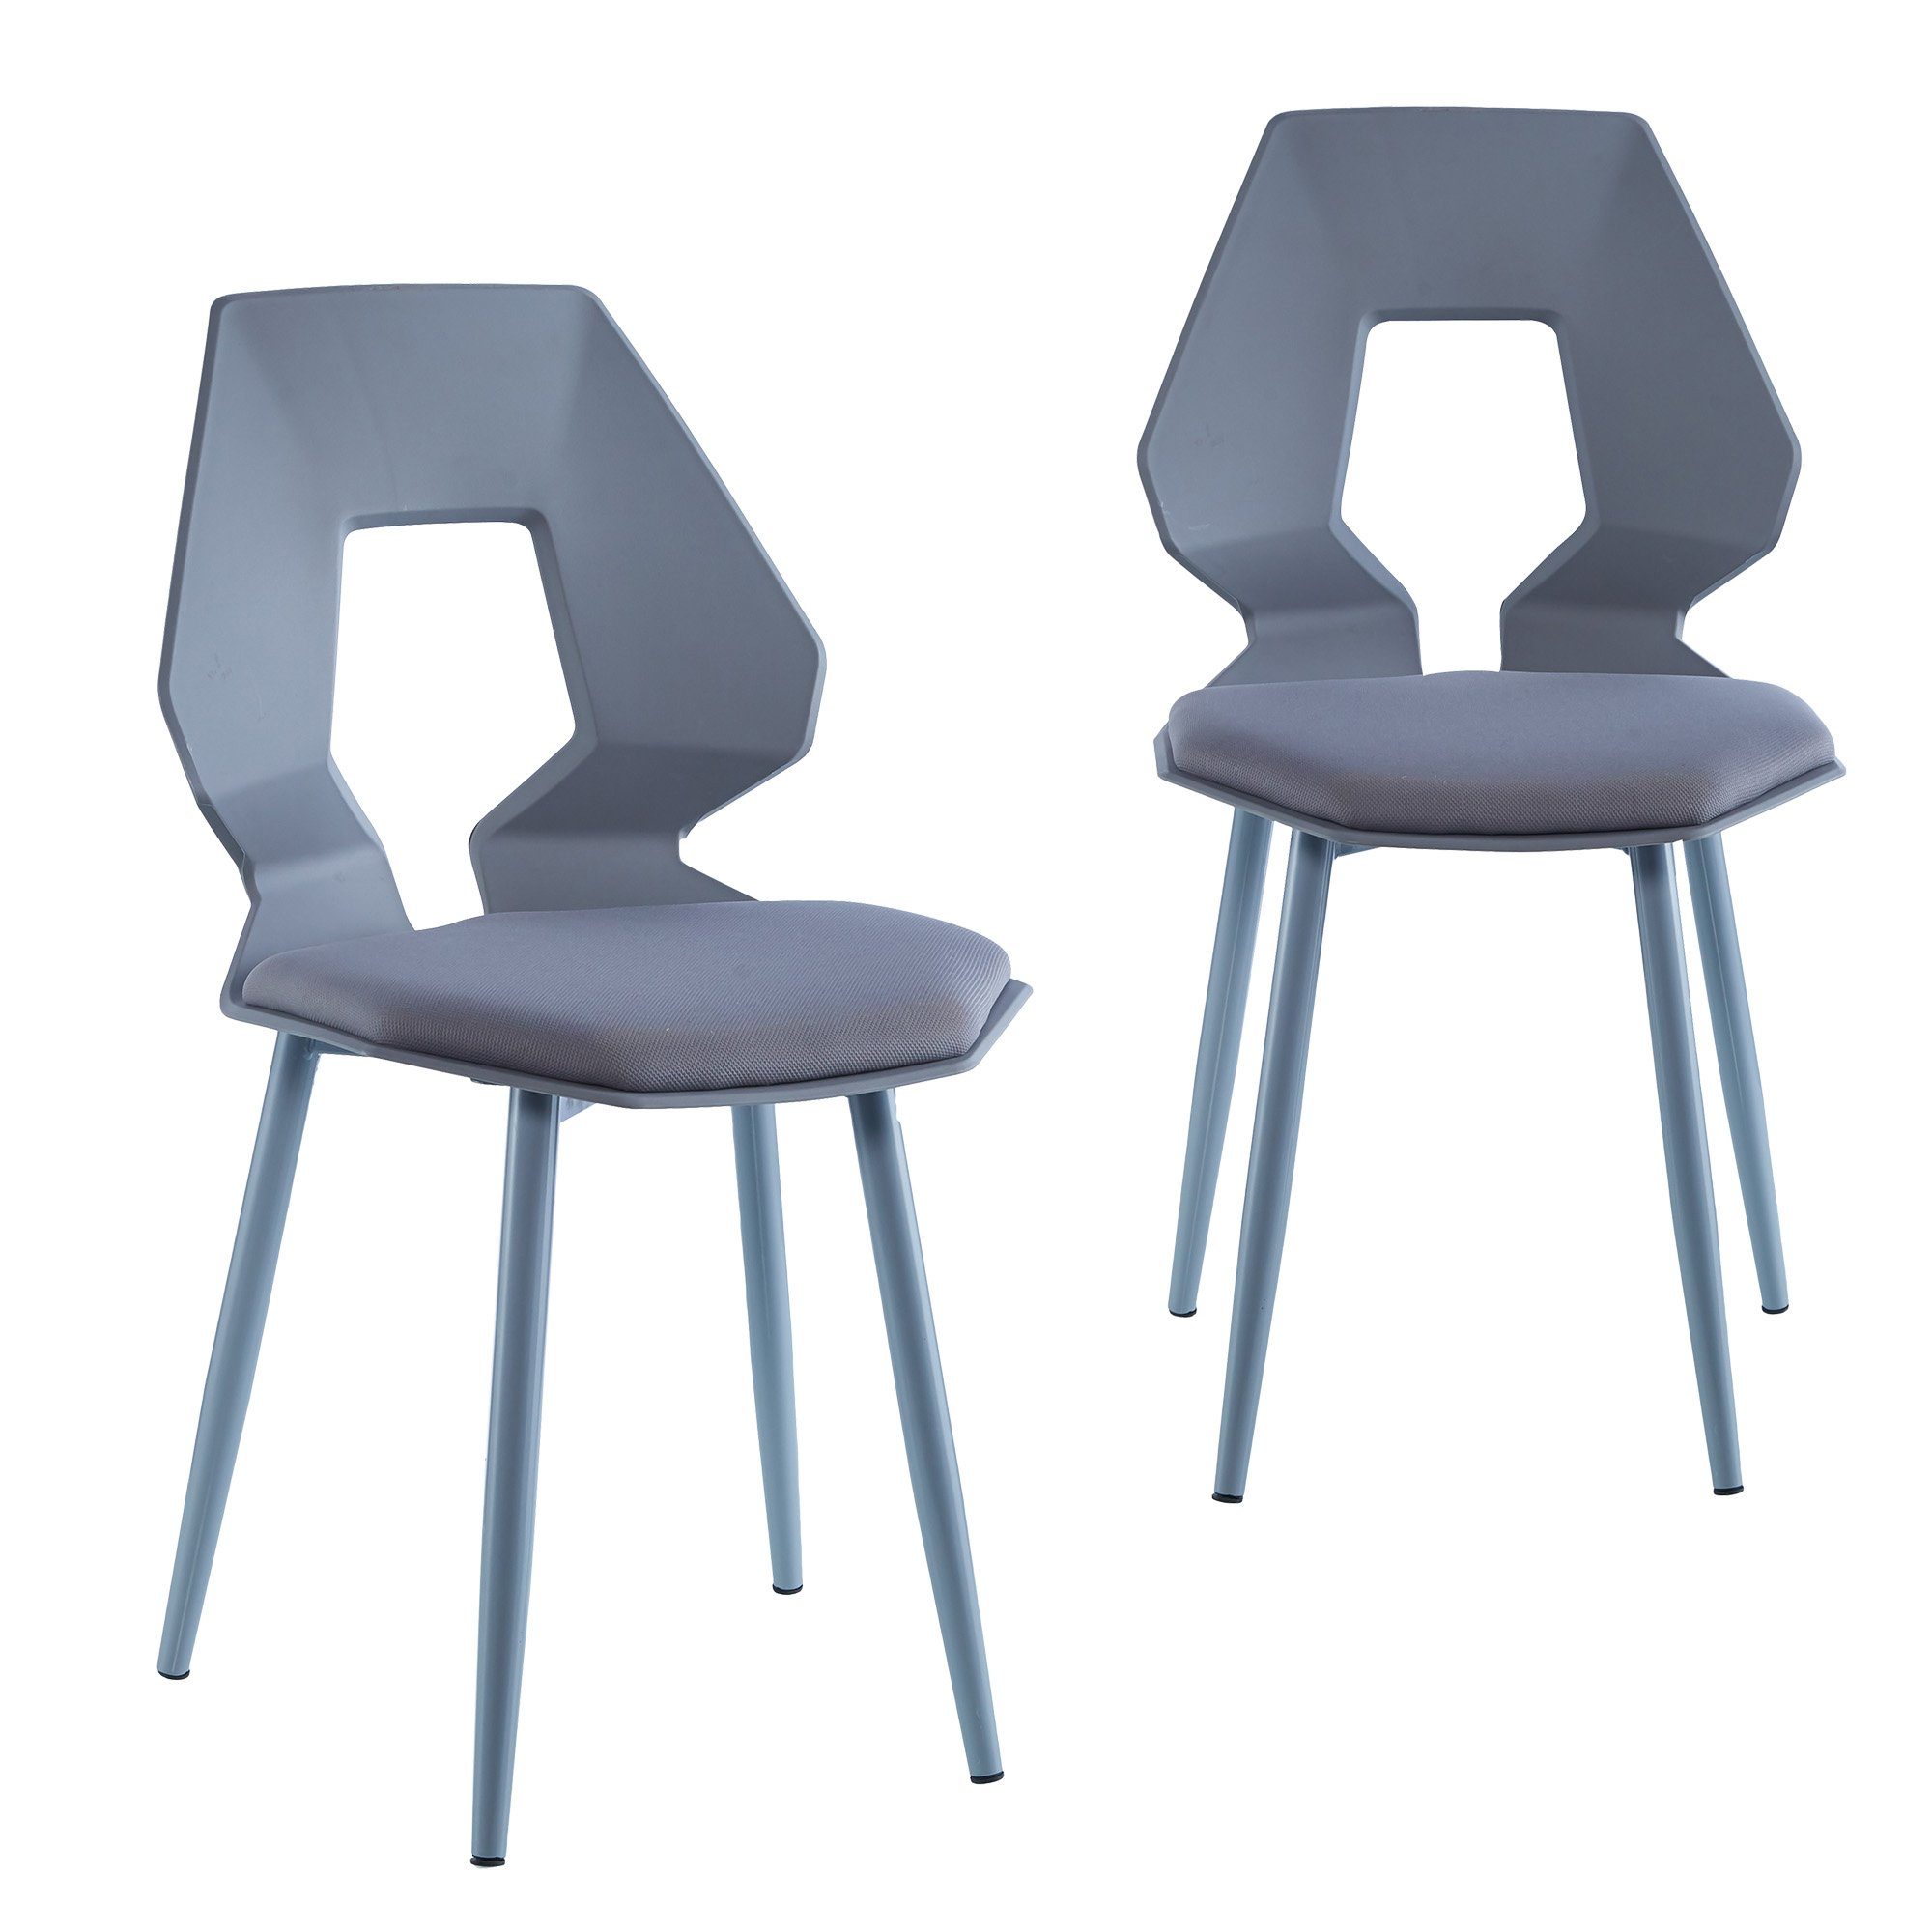 TRISENS Esszimmerstuhl Dorian (2er oder 4er Set, 2 St), Essstuhl aus stabiler Hartplastik Küchenstuhl in futuristischer Optik Grau / Grau